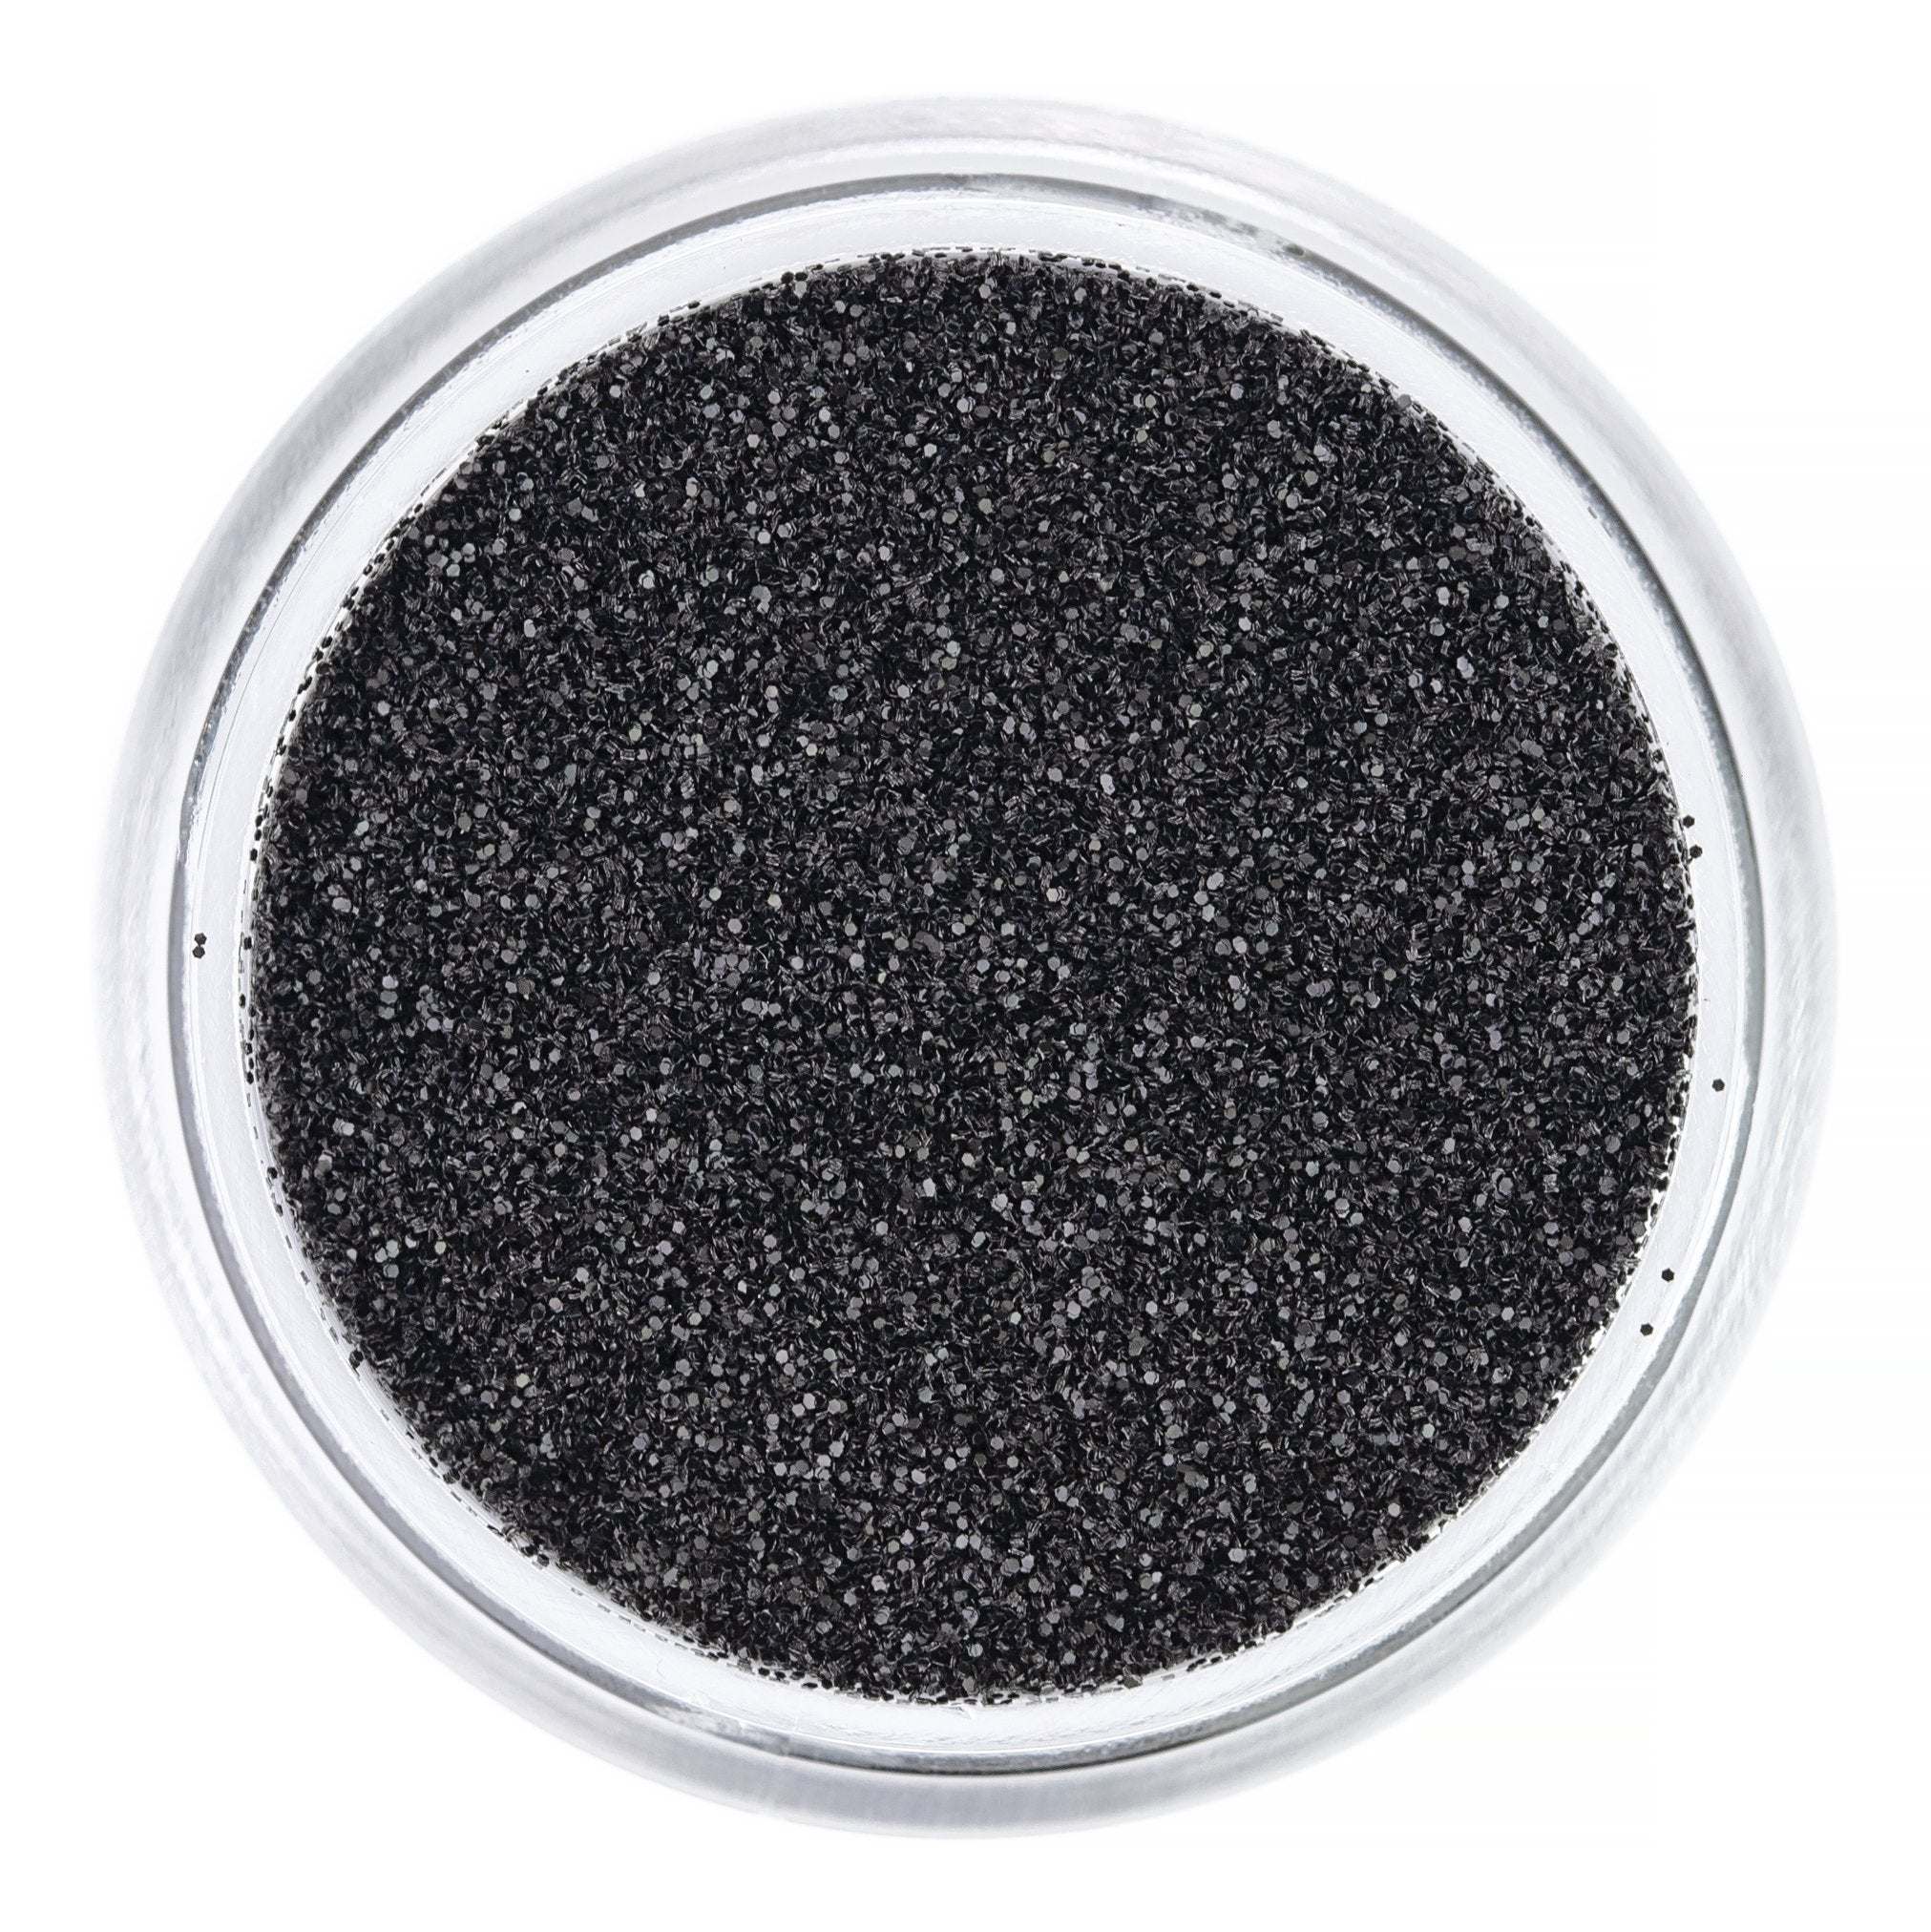 NEW! Obsidian Black Biodegradable Glitter - Various Sizes - Dust & Dance